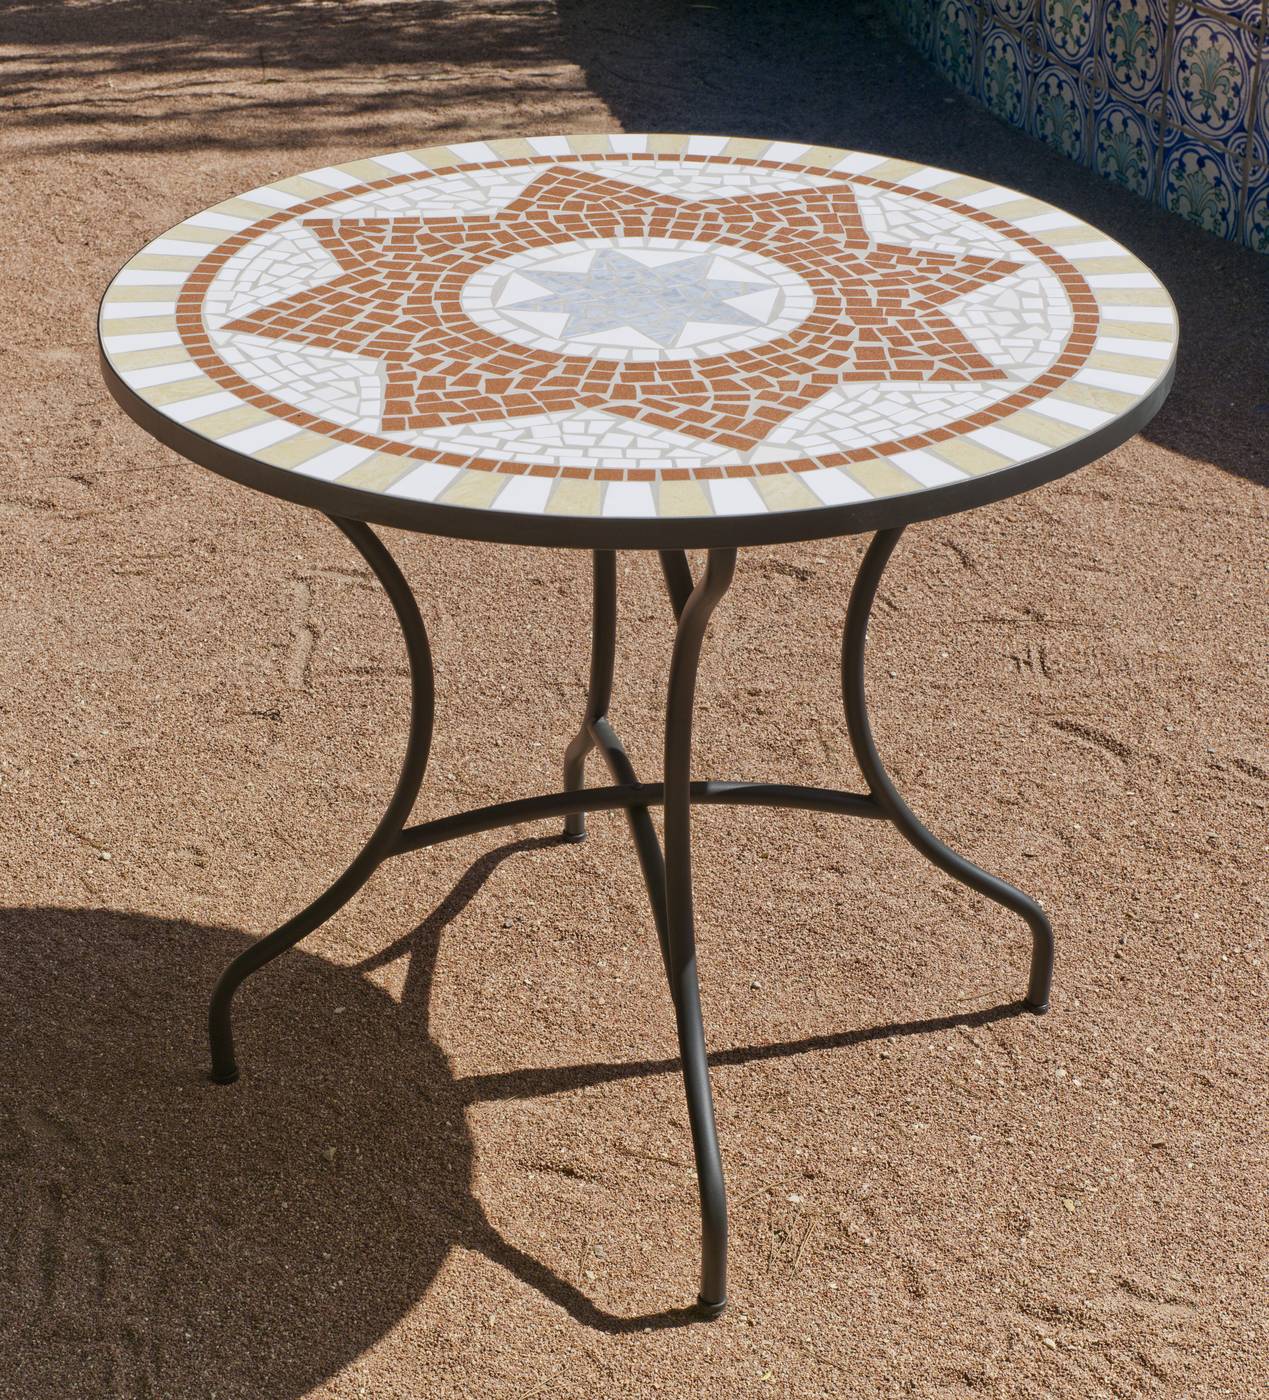 Set Mosaico Aney-Beldey 90-6 - Conjunto de acero forjado color bronce: mesa redonda de forja, con tablero mosaico de 90 cm. + 4 sillones de acero y wicker